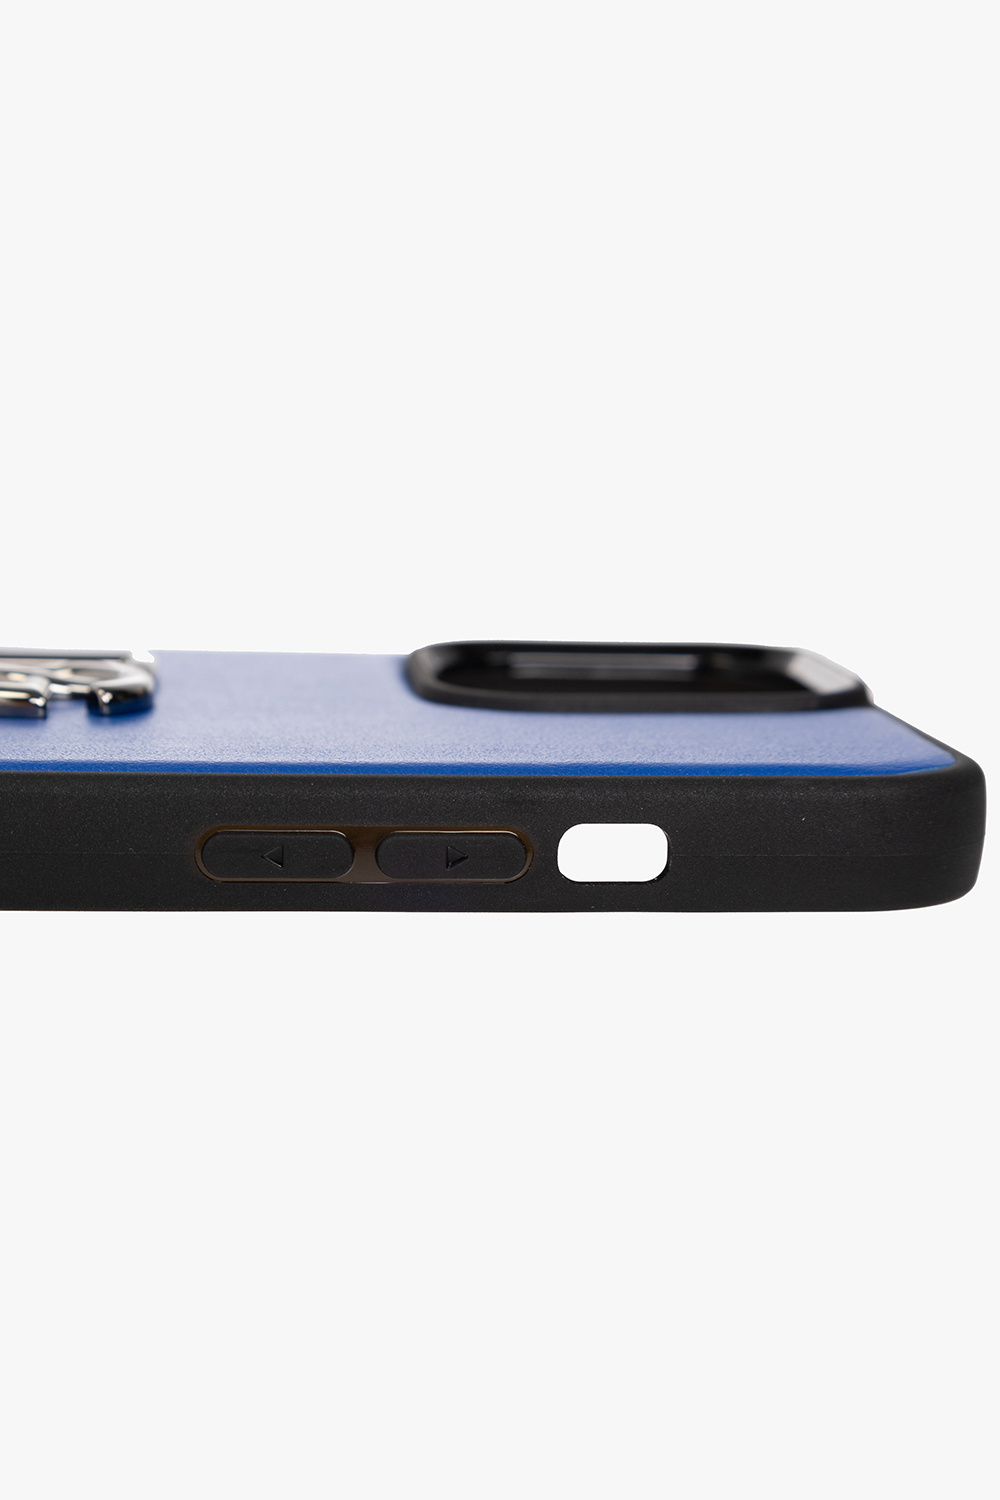 LV Blue Art iPhone 13 Pro Max Case by DG Design - Pixels